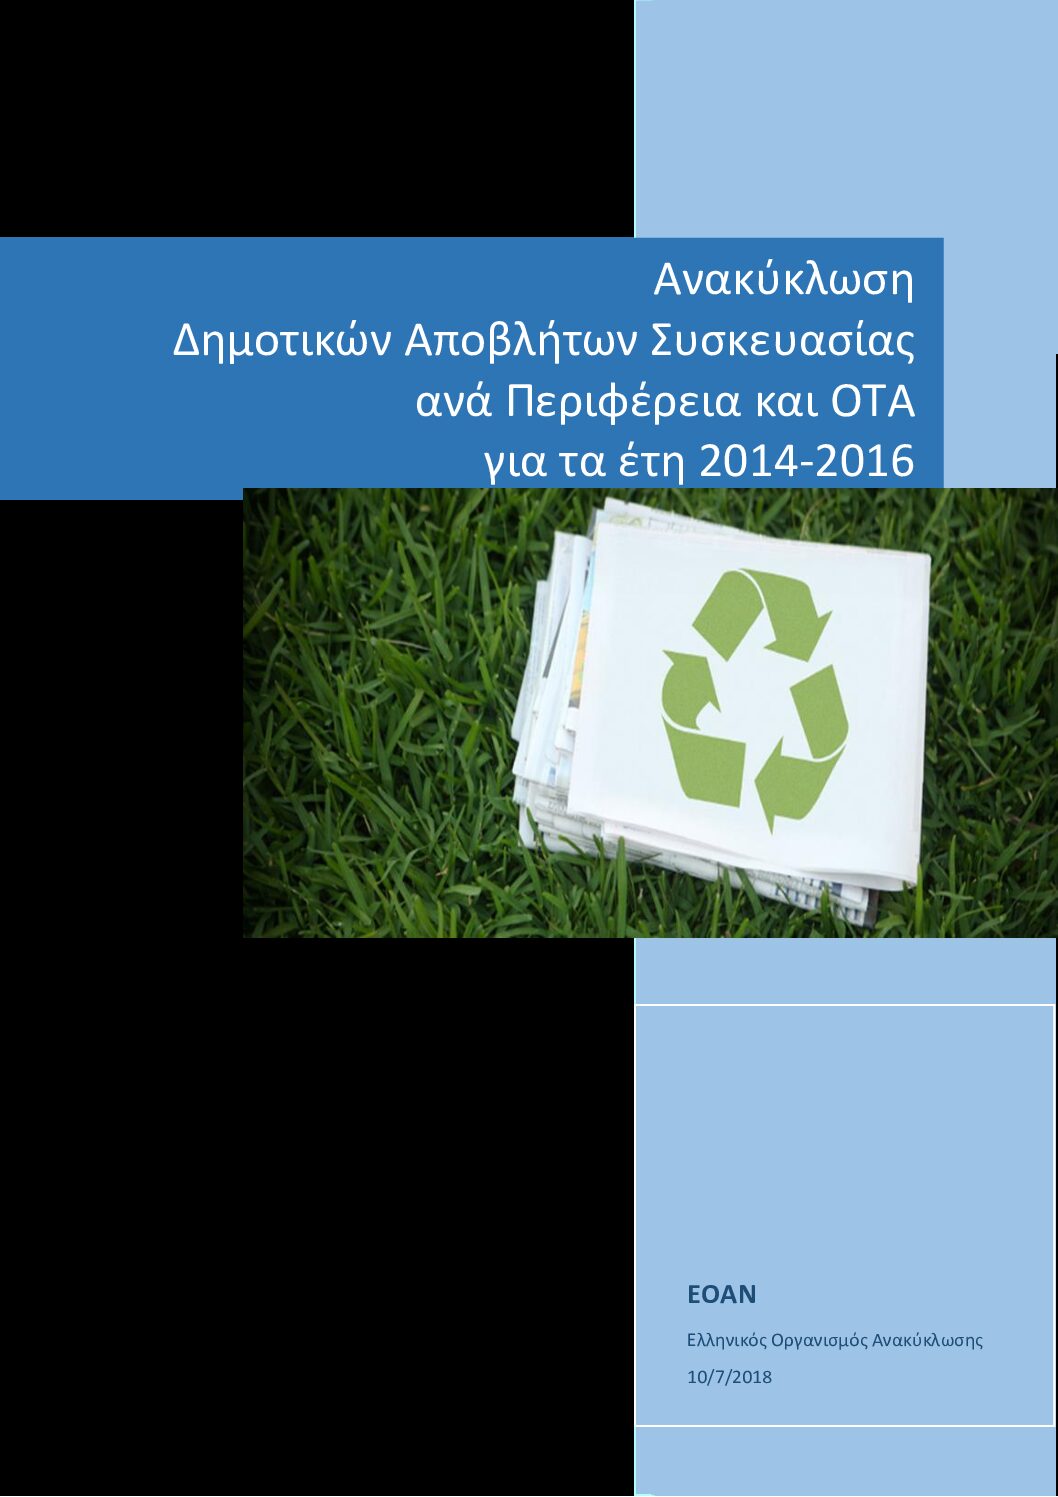 Ανακύκλωση Δημοτικών Αποβλήτων Συσκευασίας ανά Περιφέρεια και ΟΤΑ ver 3